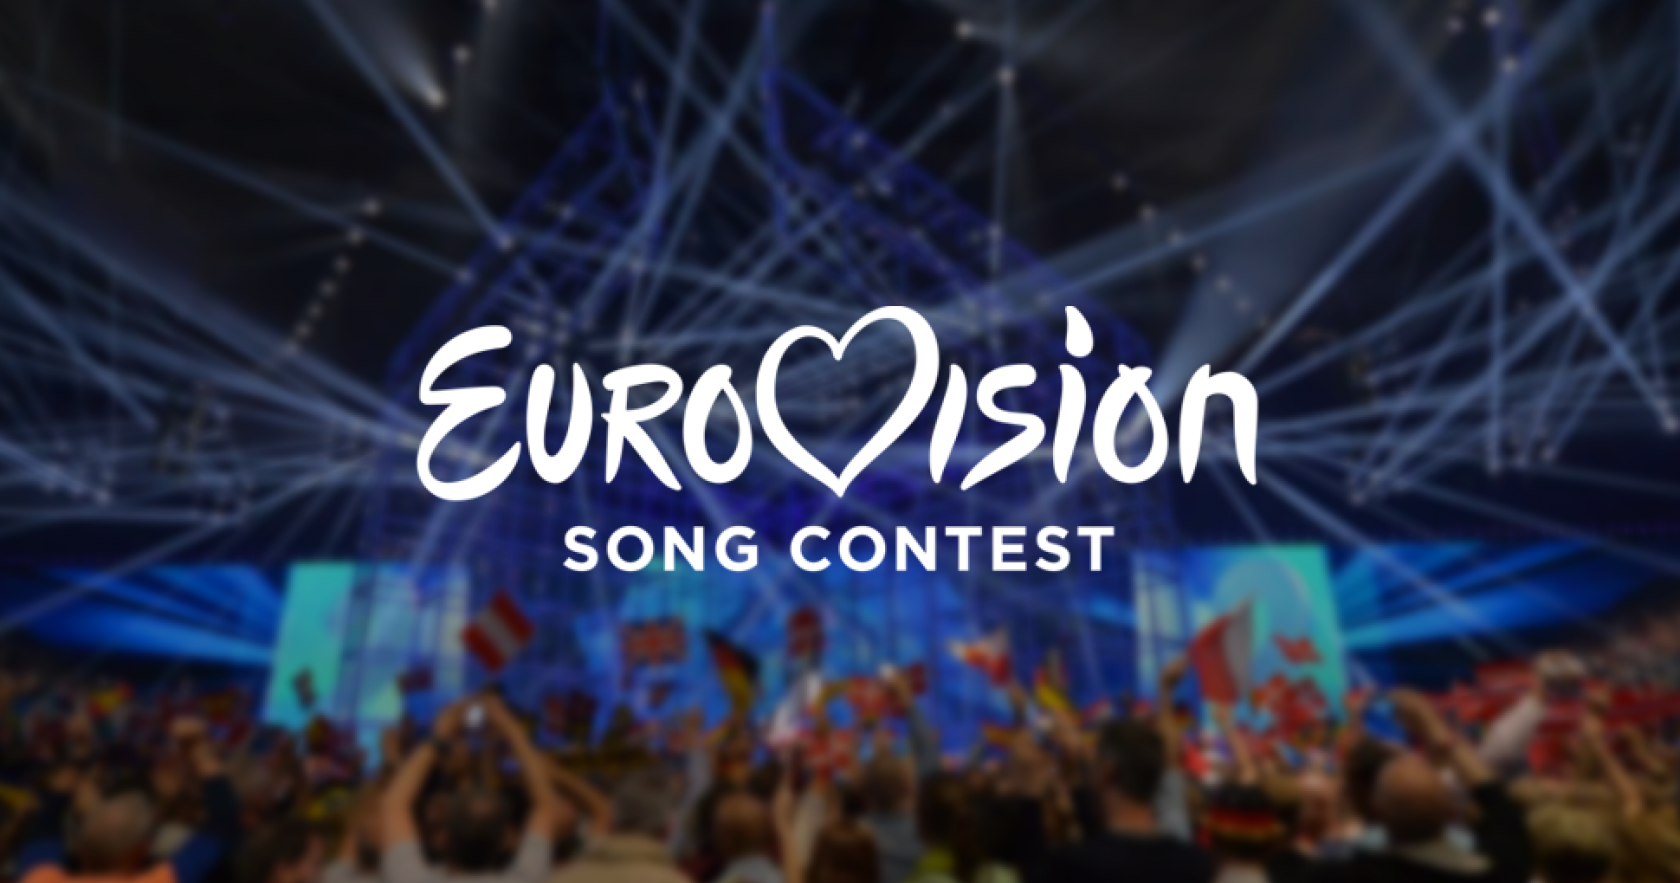 Eurovision 2020: Ποιος αναμένεται να εκπροσωπήσει τον φετινό διαγωνισμό; (βίντεο)